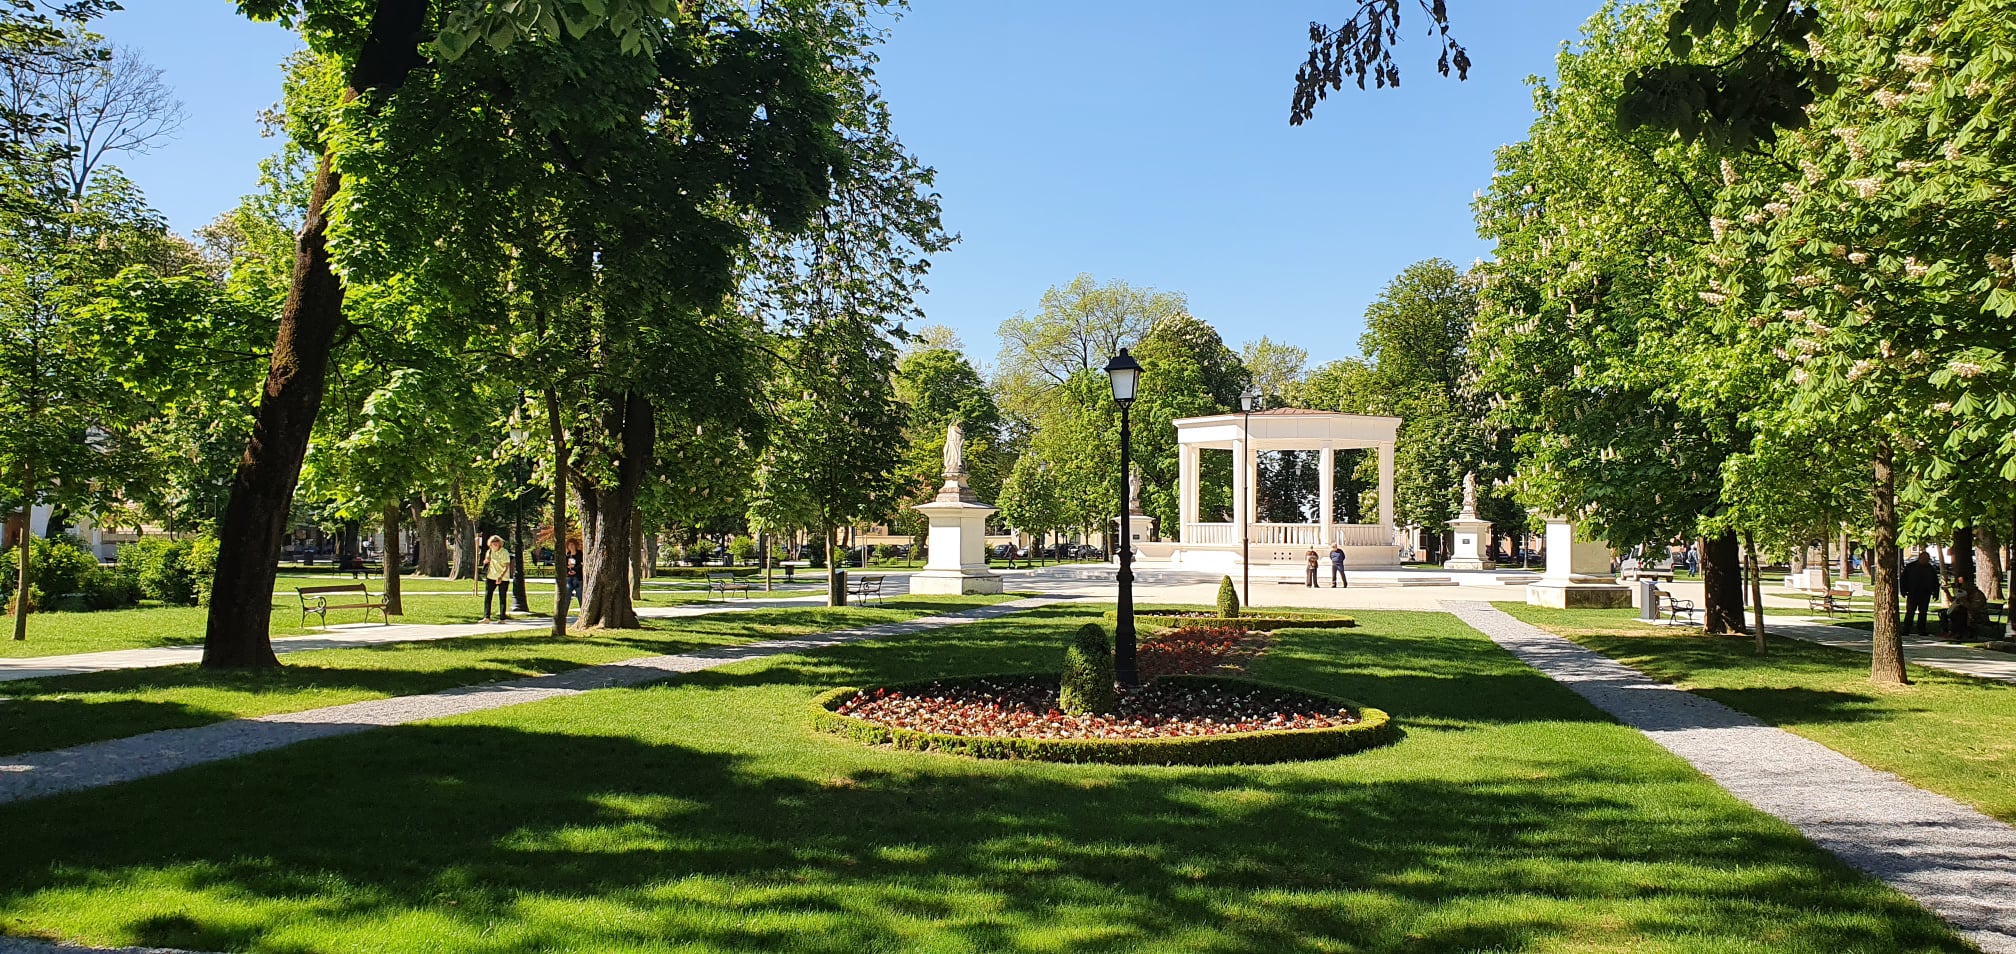 Bjelovarski središnji park zasjao nekadašnjim sjajem, tri milijuna kuna domaćim tvrtkama